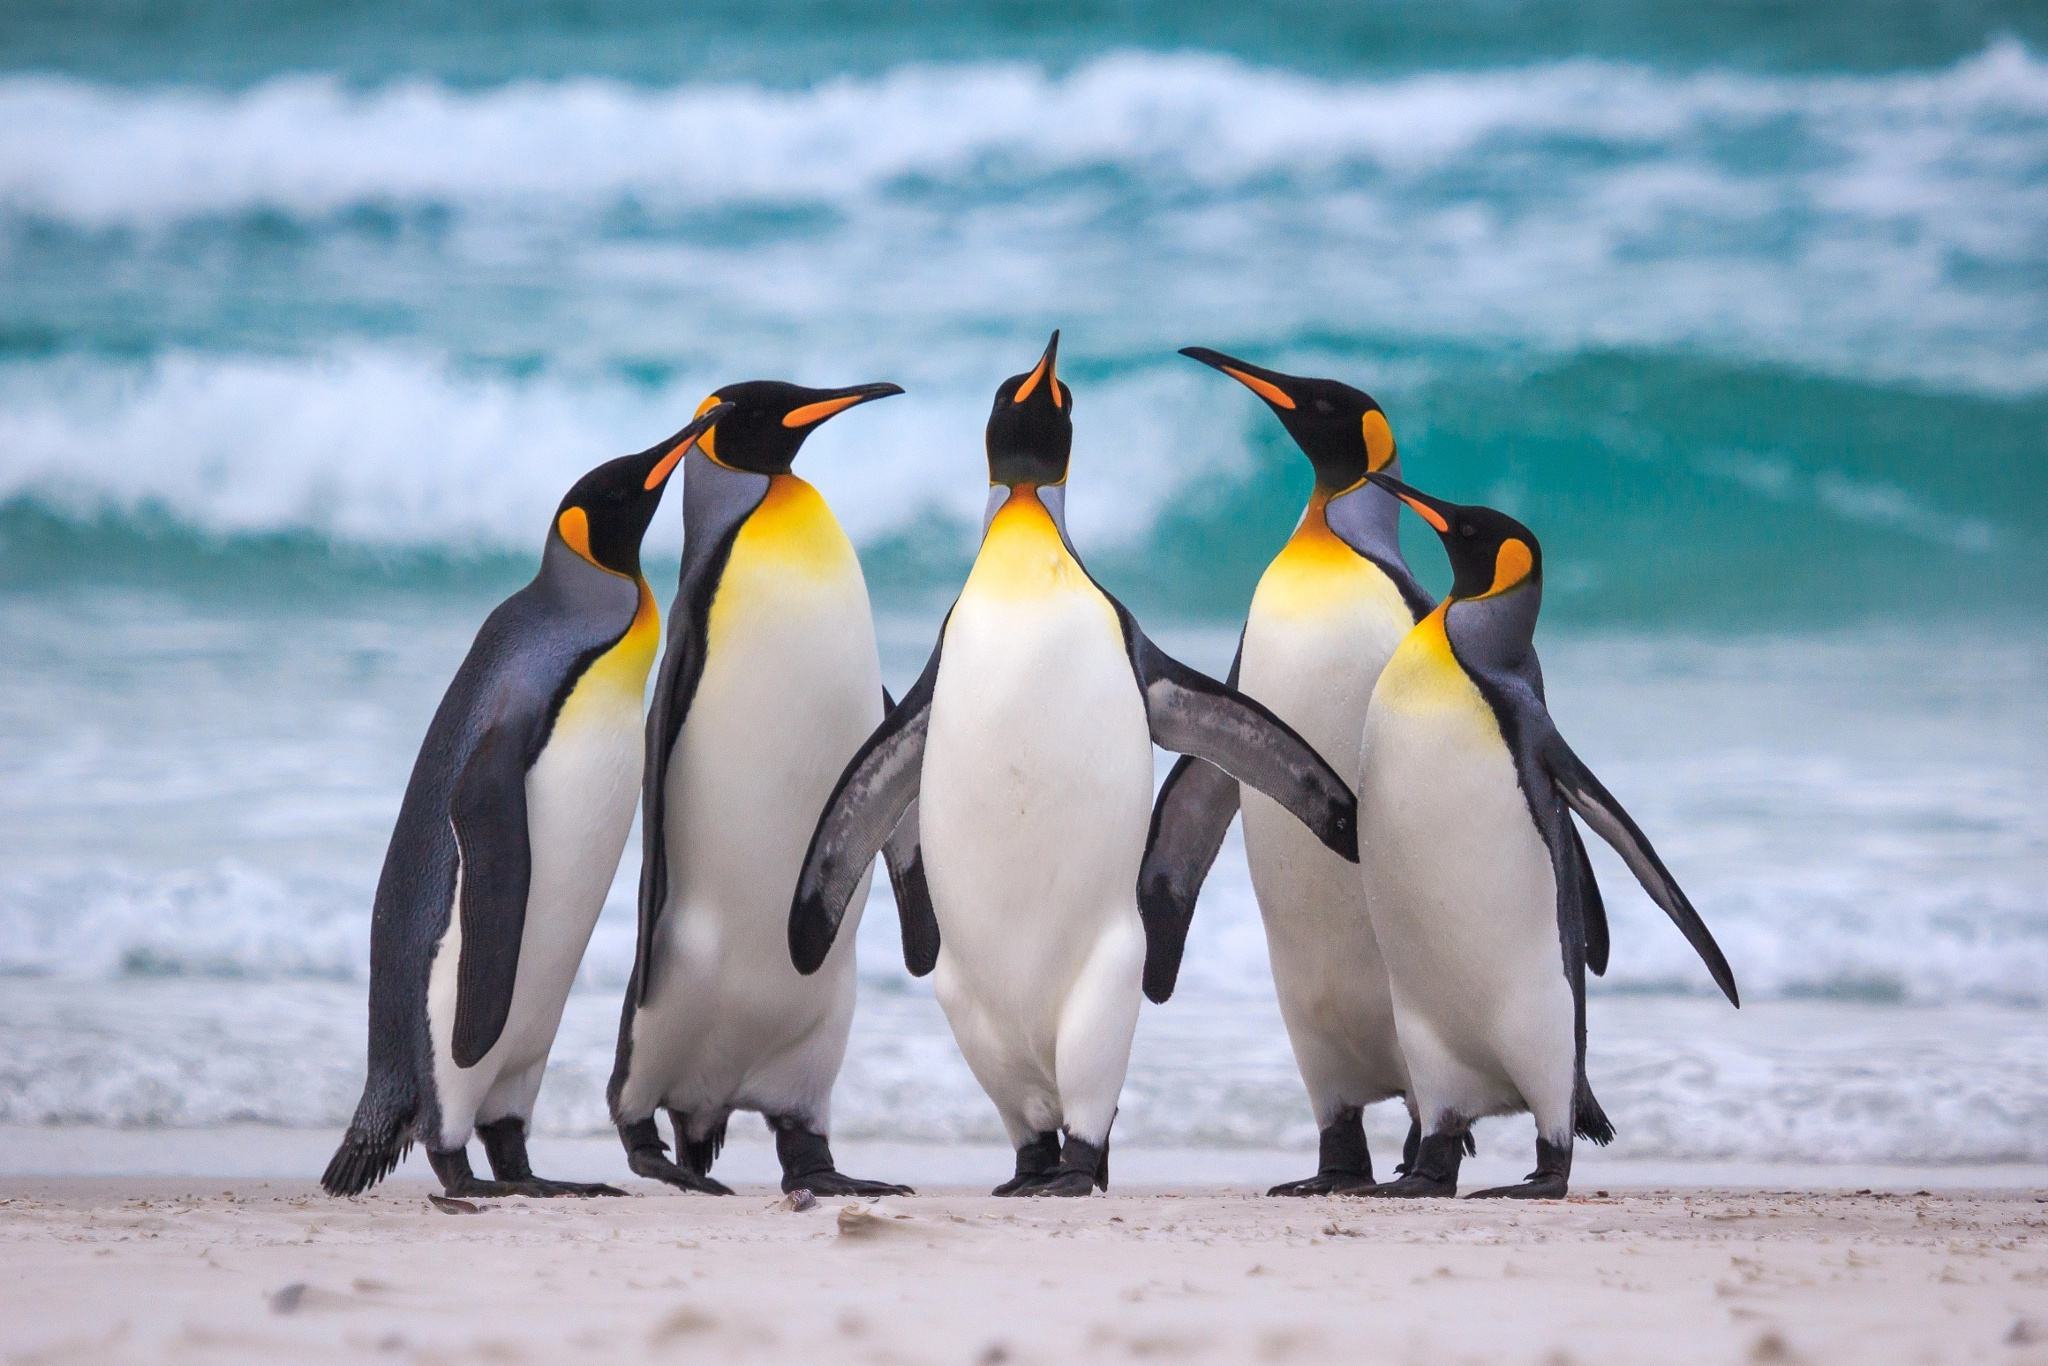 Năm chú chim cánh cụt hoàng đế tuyệt vời